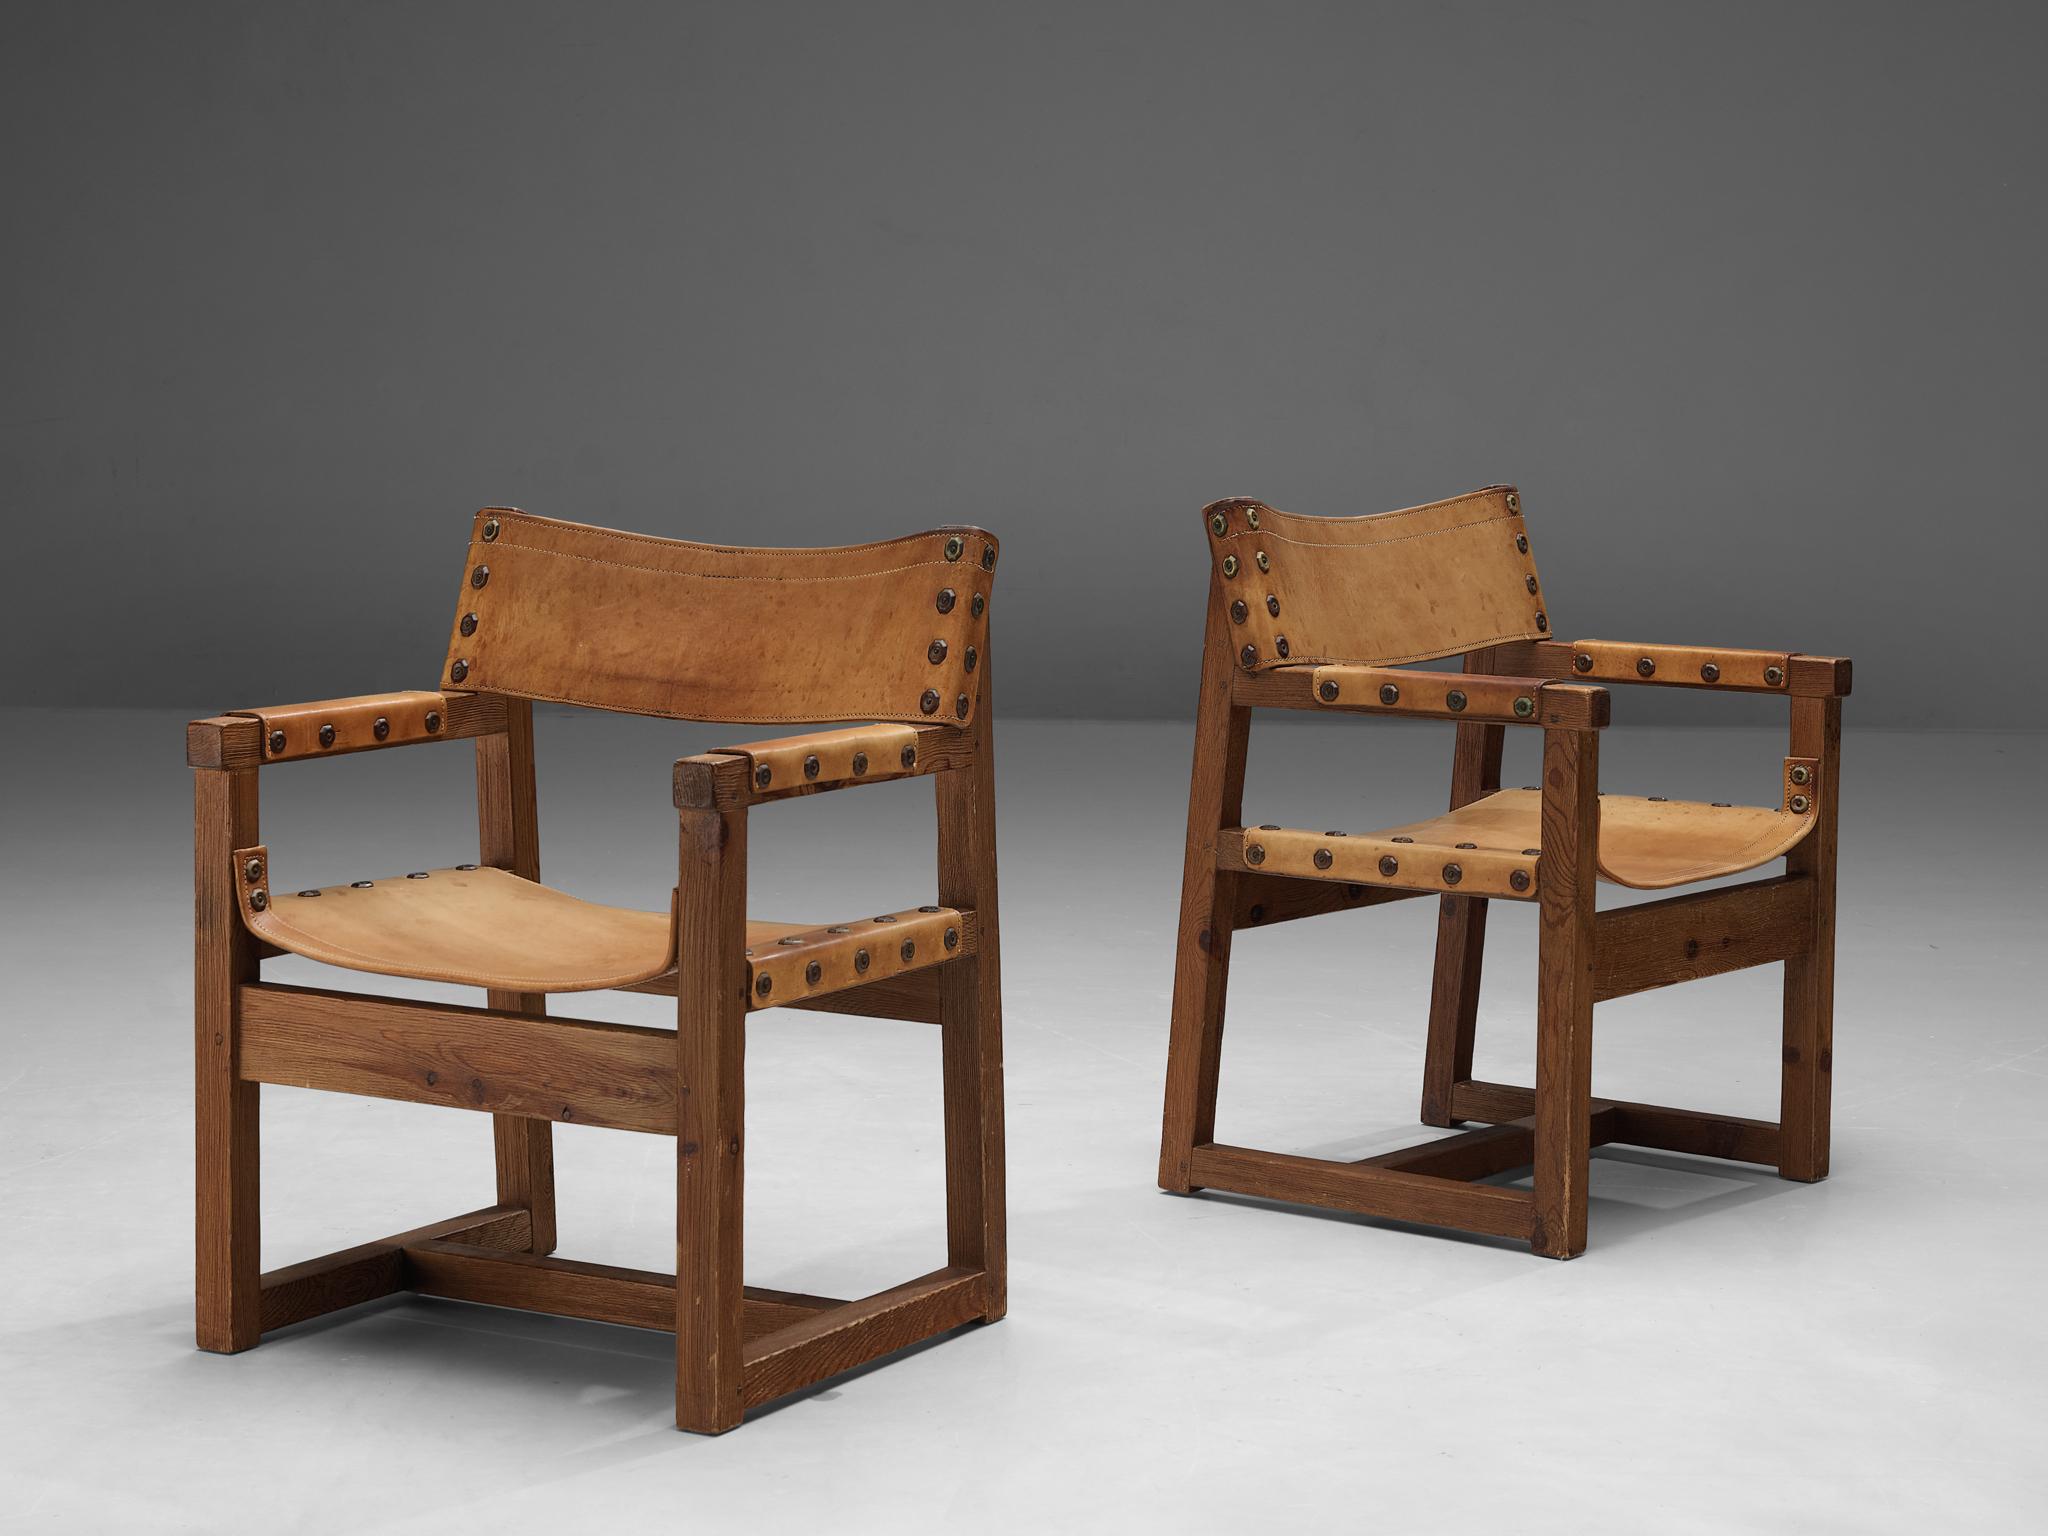 Biosca, Paar Stühle, Leder, Kiefer, Spanien, 1950er Jahre 

Robuste Stühle, hergestellt von der spanischen Firma BIOSCA. Diese Stühle sind aus Kiefernholz gefertigt und haben eine wunderschöne Ledersitzfläche. Die Stühle haben ein robustes Aussehen,